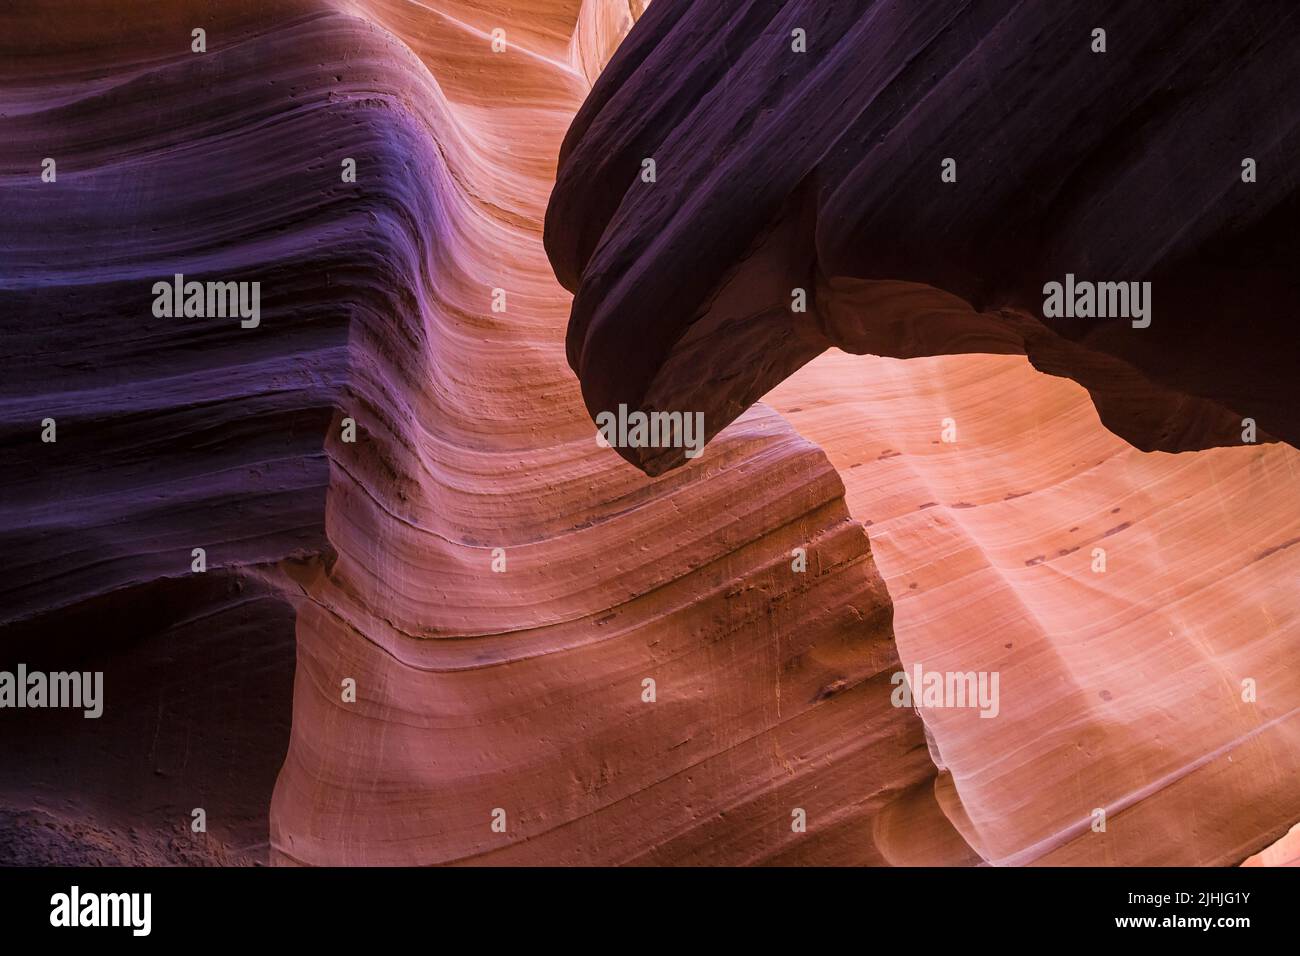 The Eagle of Lower Antelope Canyon, Arizona, United States. Stock Photo